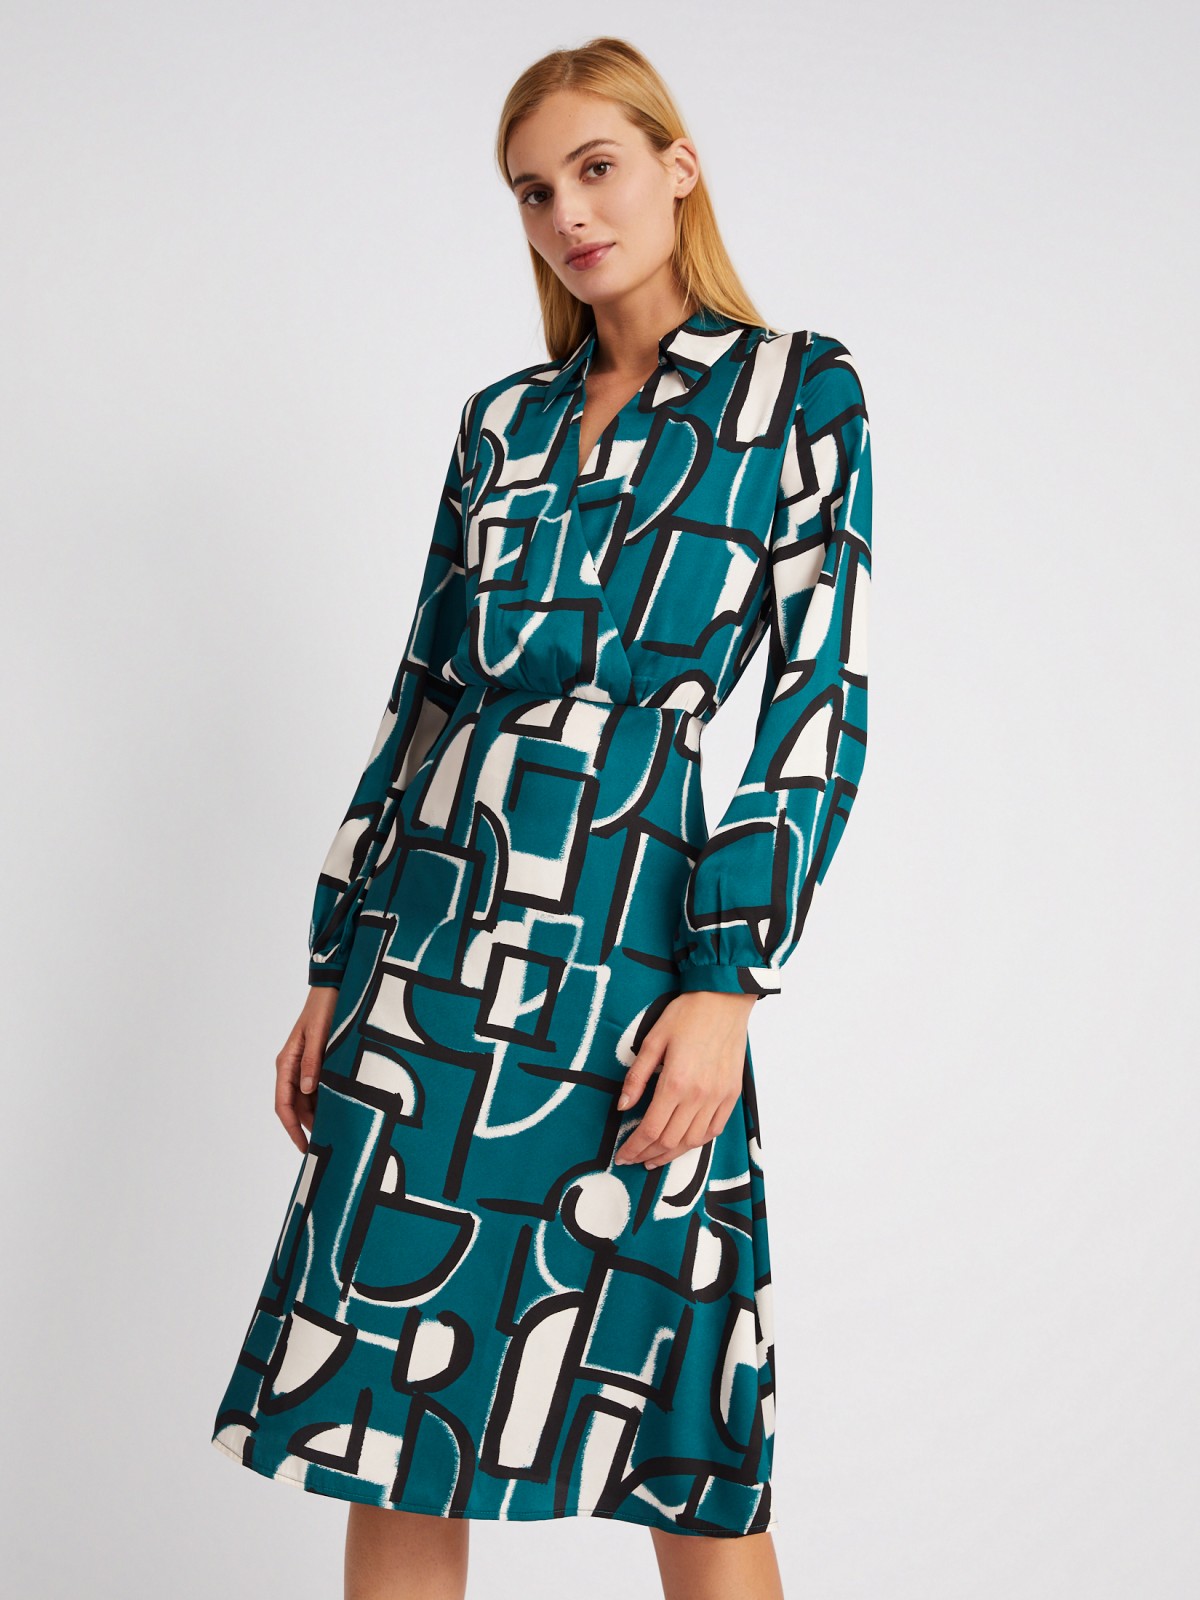 Атласное платье-рубашка длины миди с принтом zolla 024118262251, цвет темно-зеленый, размер XS